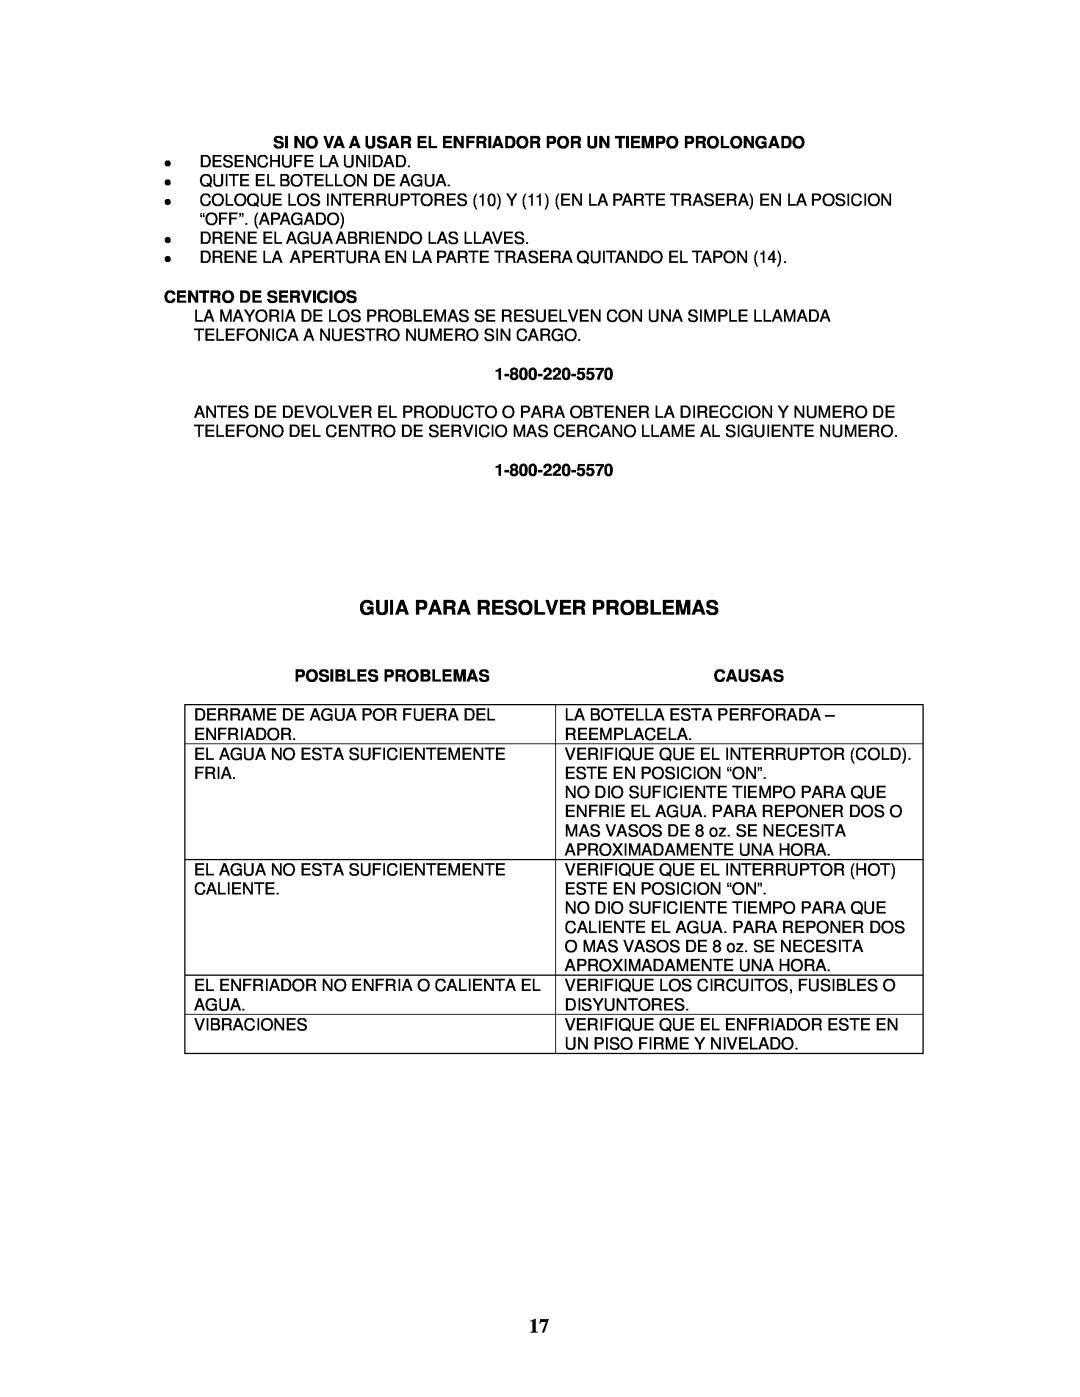 Avanti WDP75 instruction manual Centro De Servicios, Posibles Problemas, Causas 